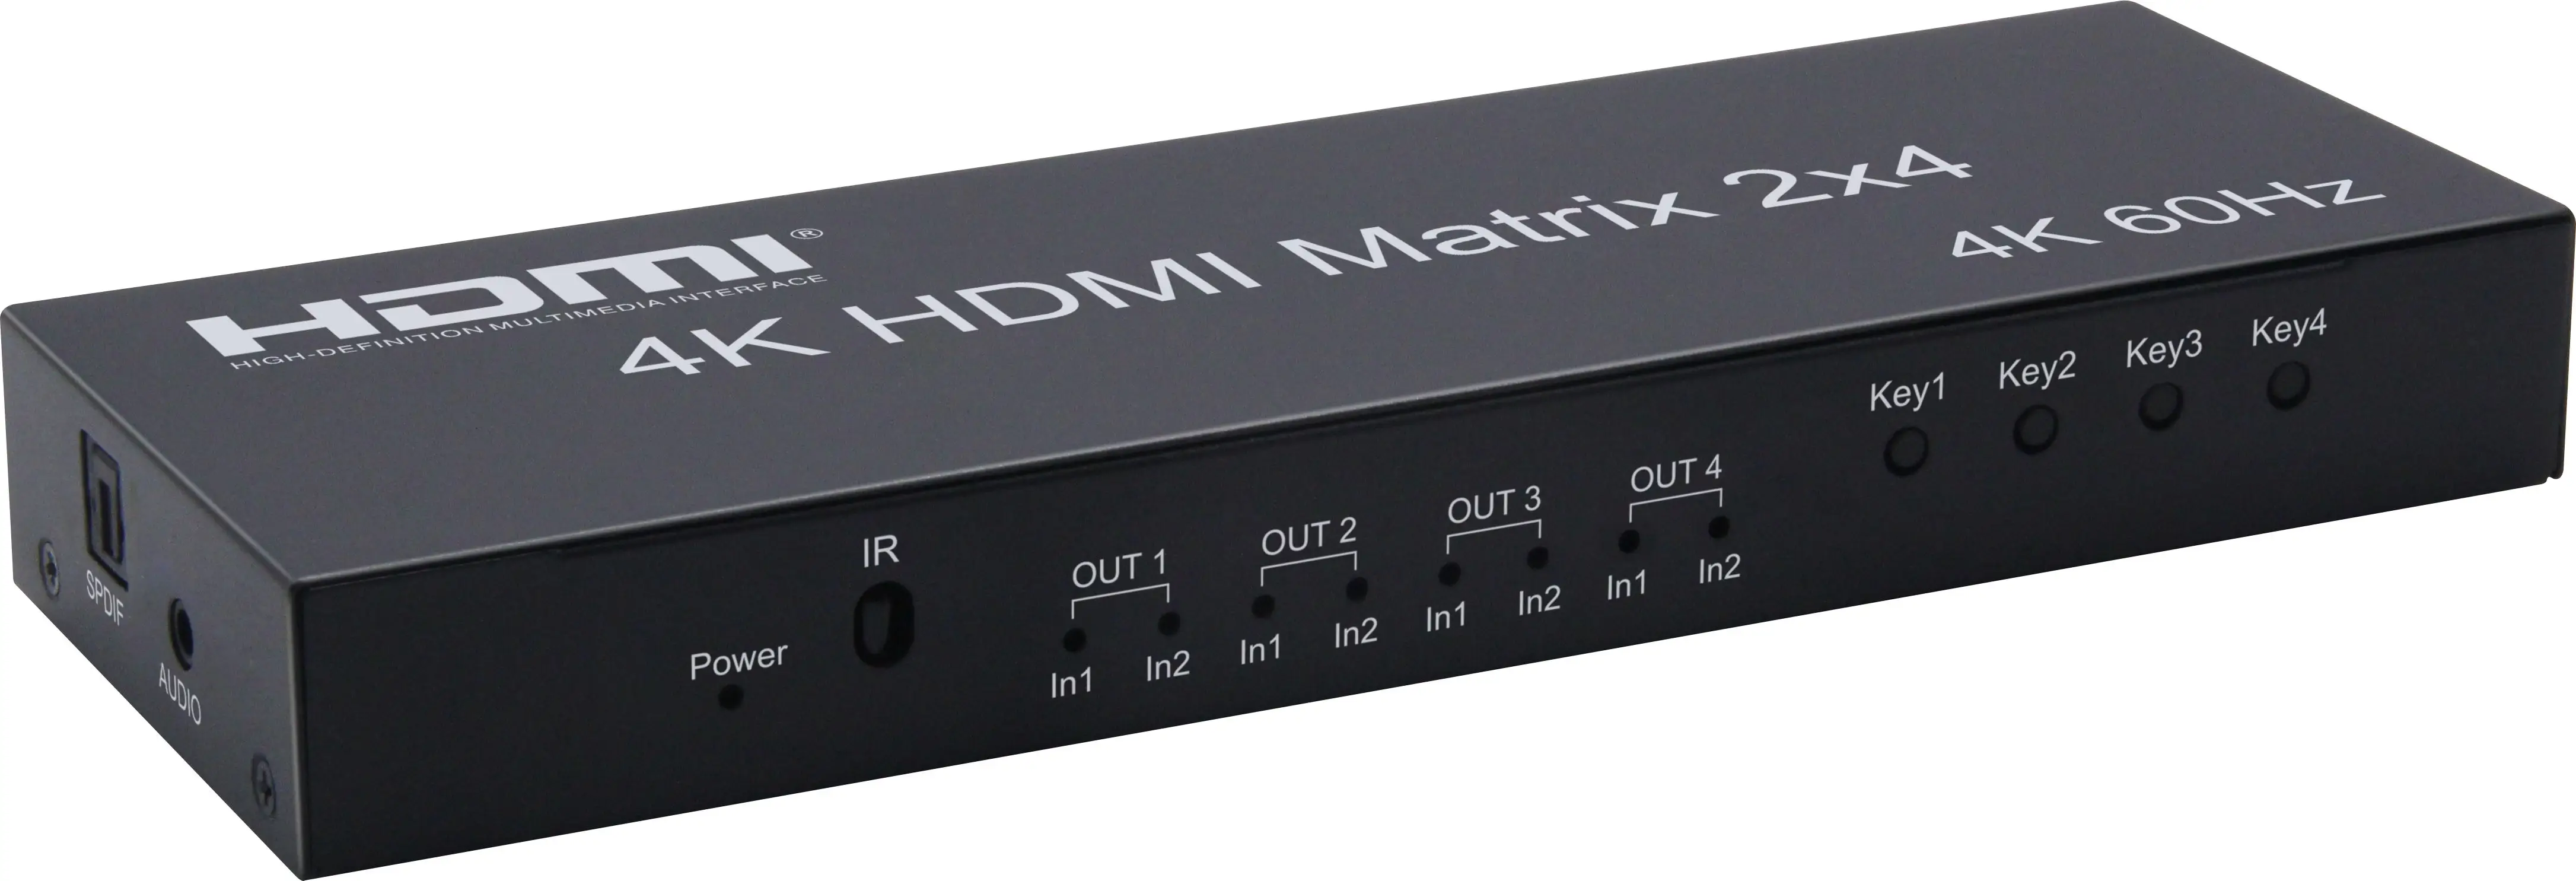 Matriz HDMI 2x4 4K @ 60Hz 2 entrada 4 salida HDMI matriz con óptica de audio estéreo de salida